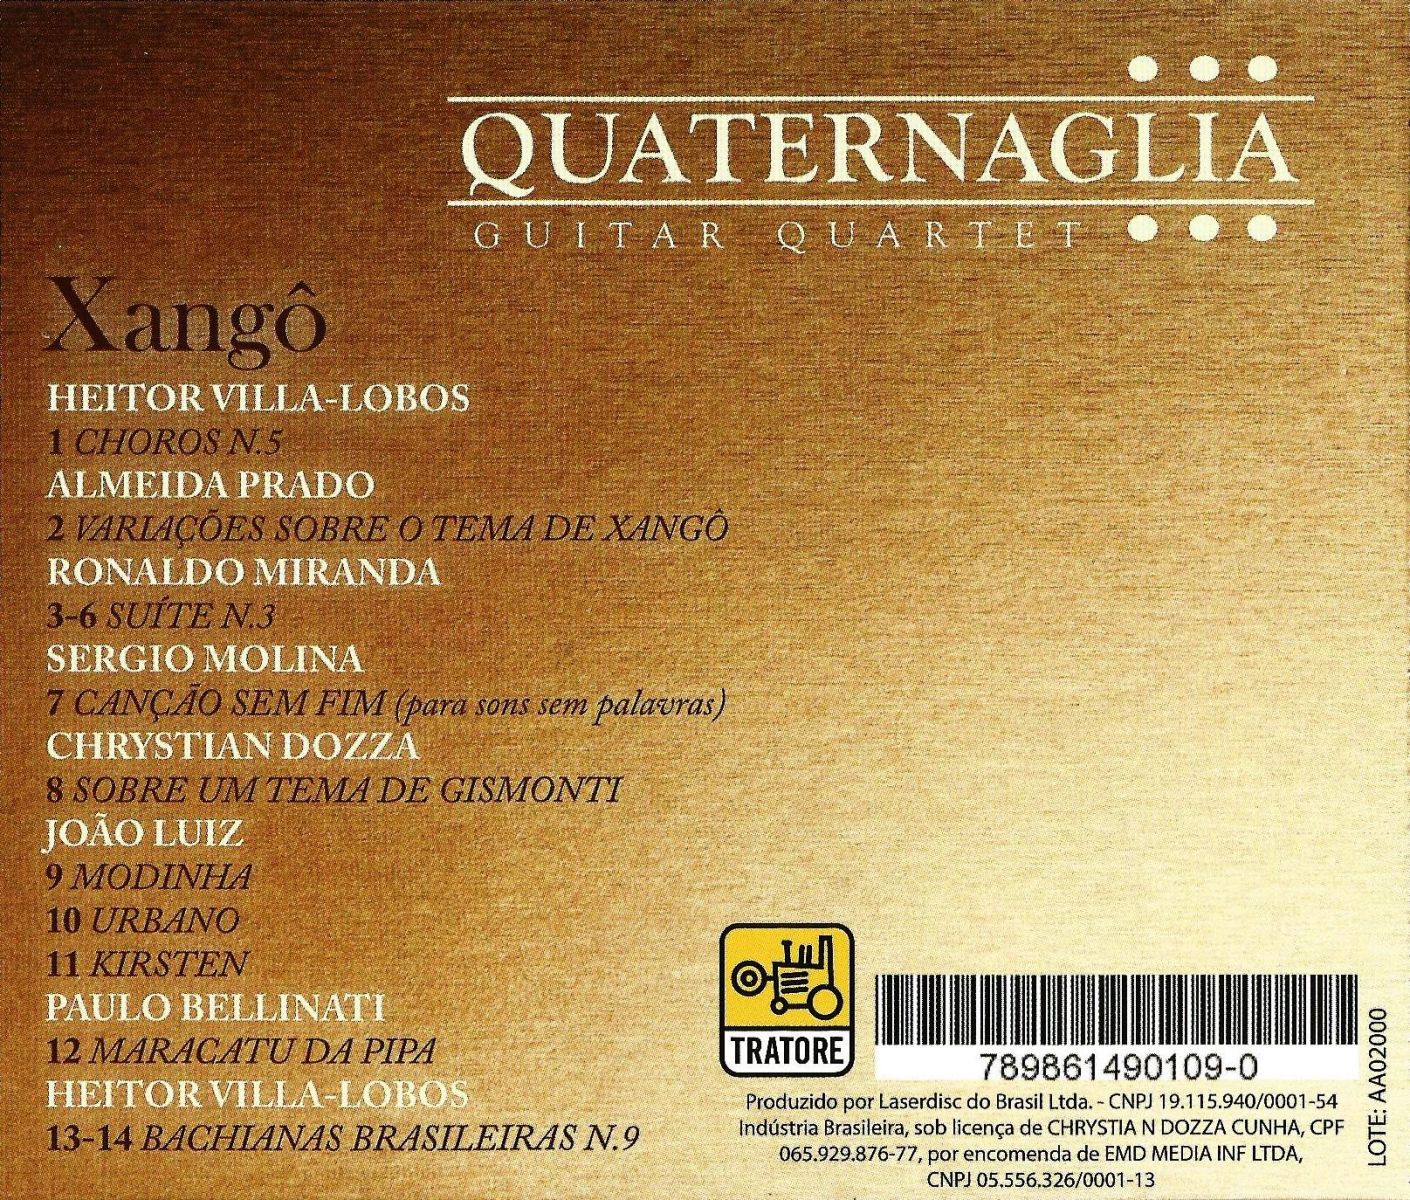 Acervo destaca Xangô, sétimo CD do Quaternaglia